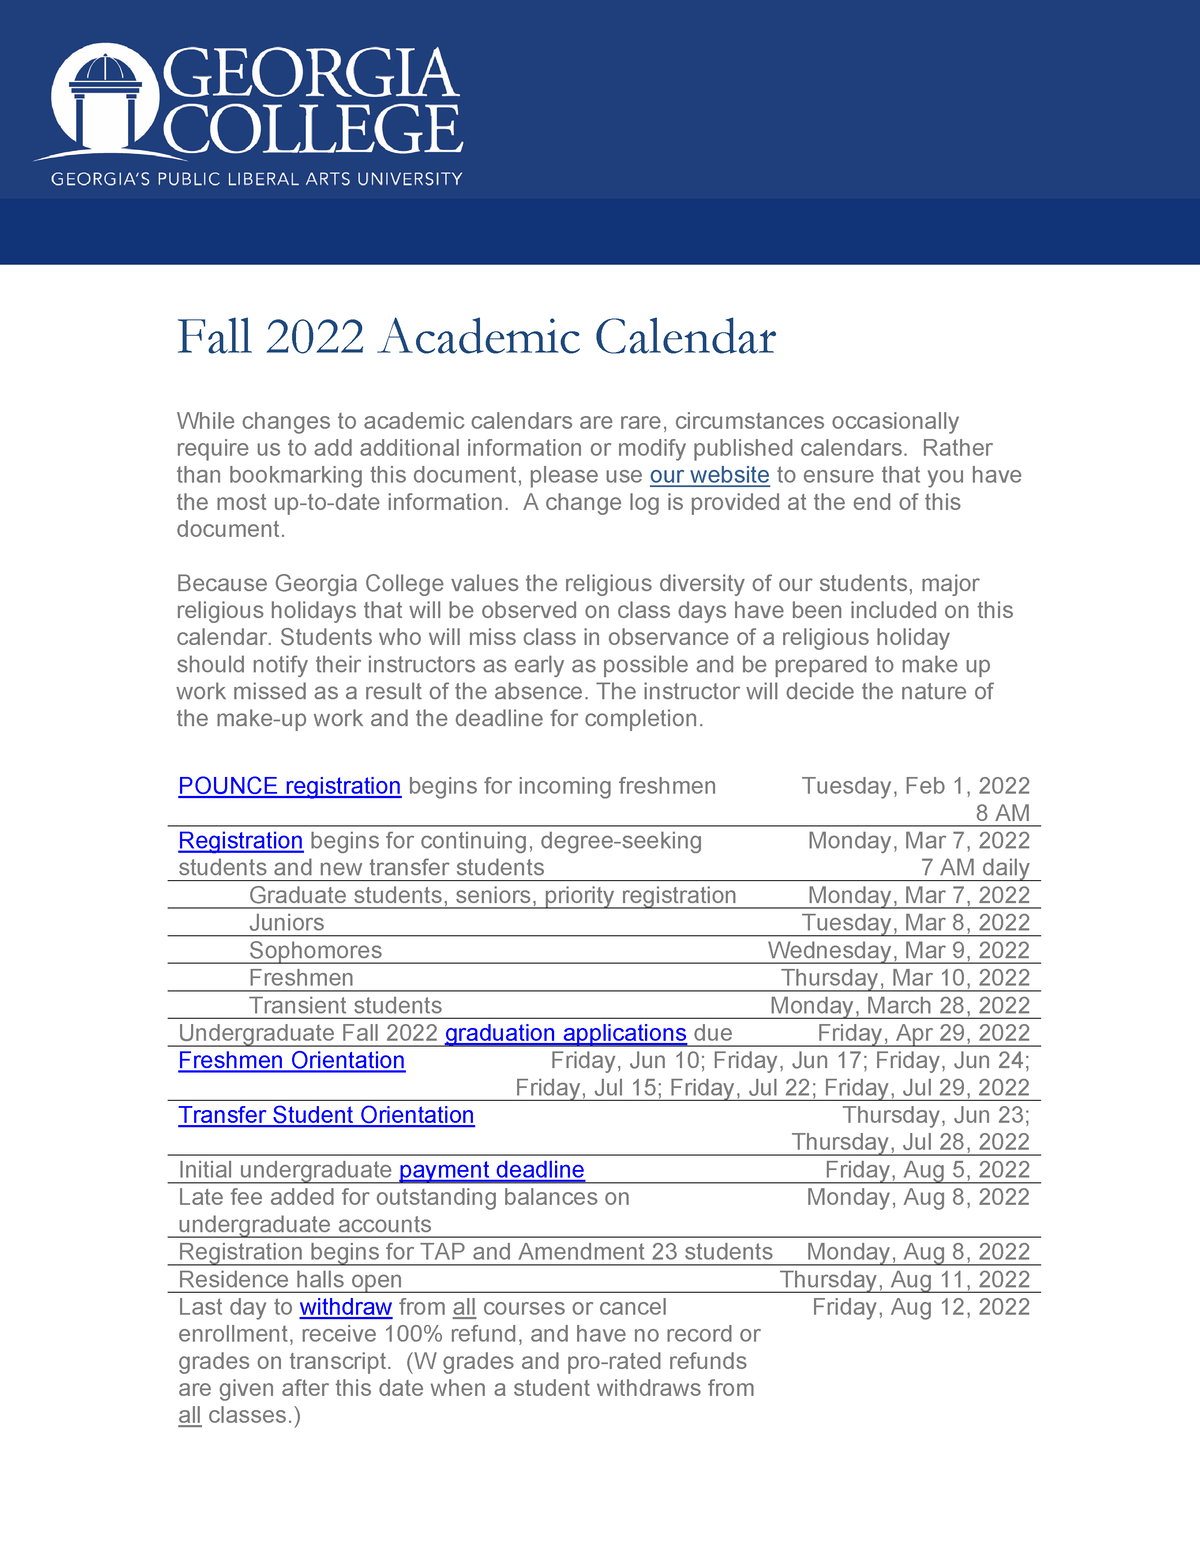 Academic Calendar Fall 2022 20210323 Fall 2022 Academic Calendar